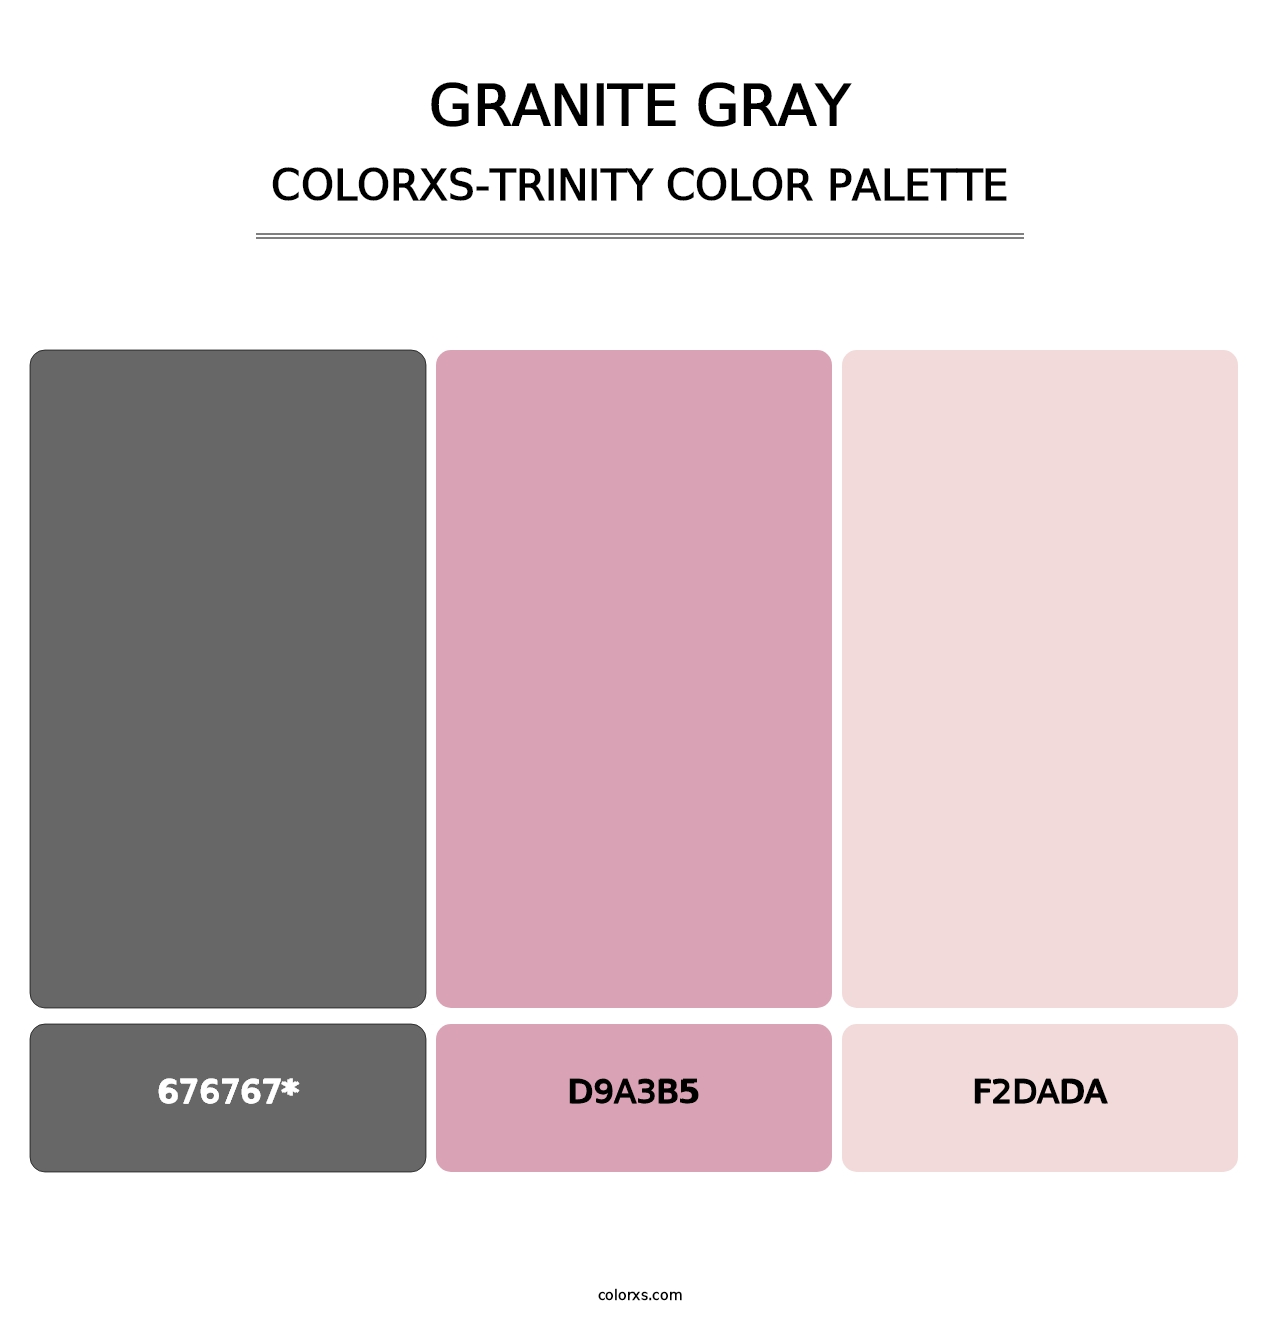 Granite Gray - Colorxs Trinity Palette